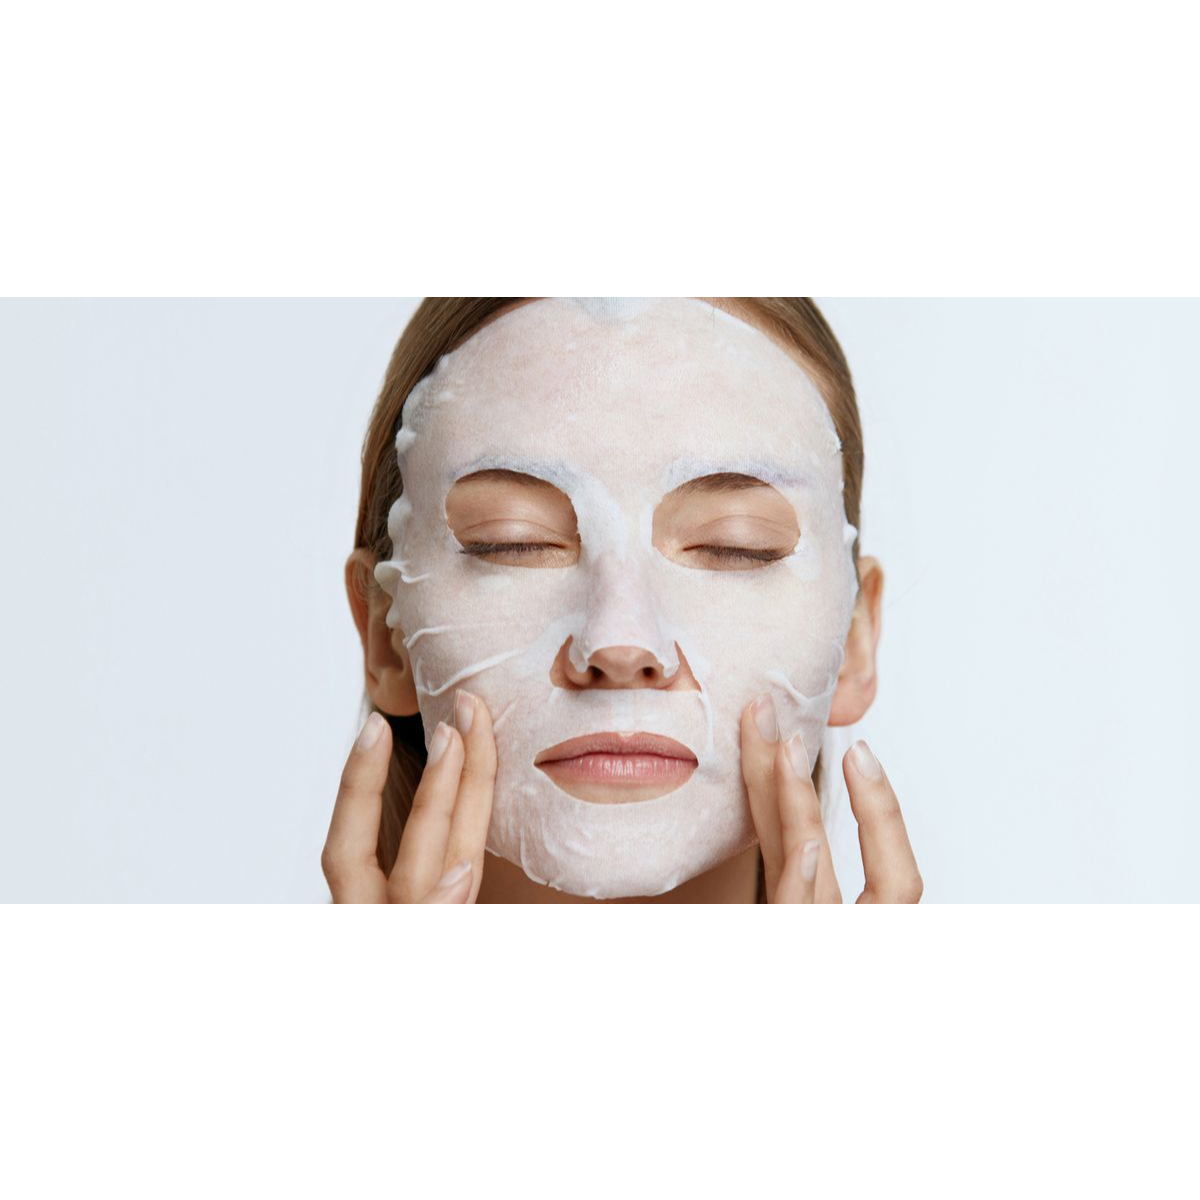 The Body Shop Vitamin E Quench Sheet Mask